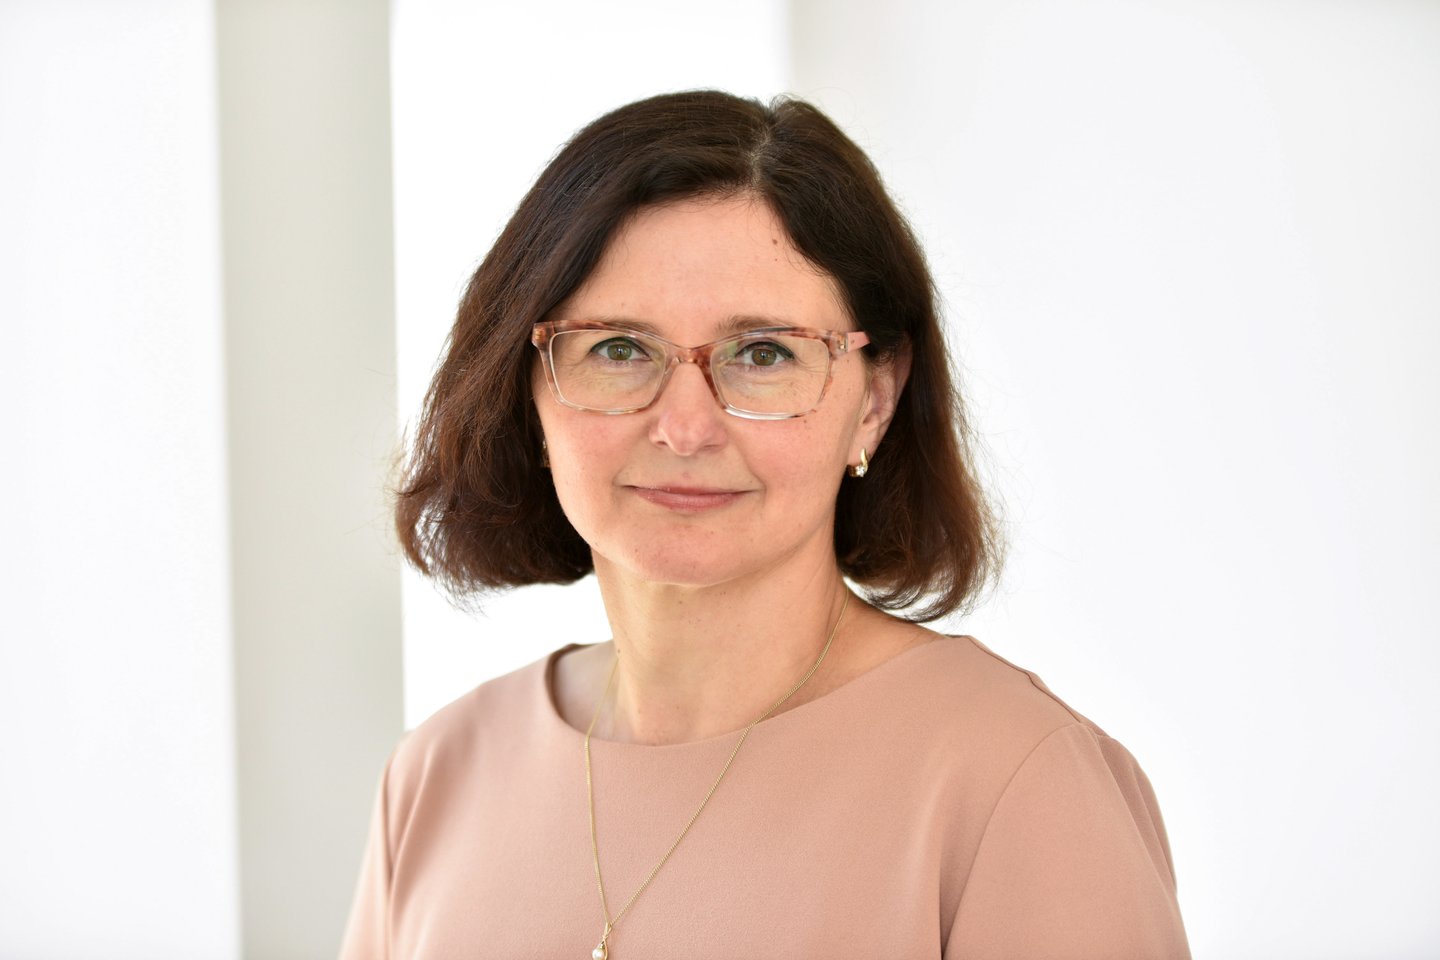  Vytauto Didžiojo universiteto (VDU) Švietimo akademijos kanclerė, profesorė Lina Kaminskienė.<br> Asmeninio archyvo nuotr.